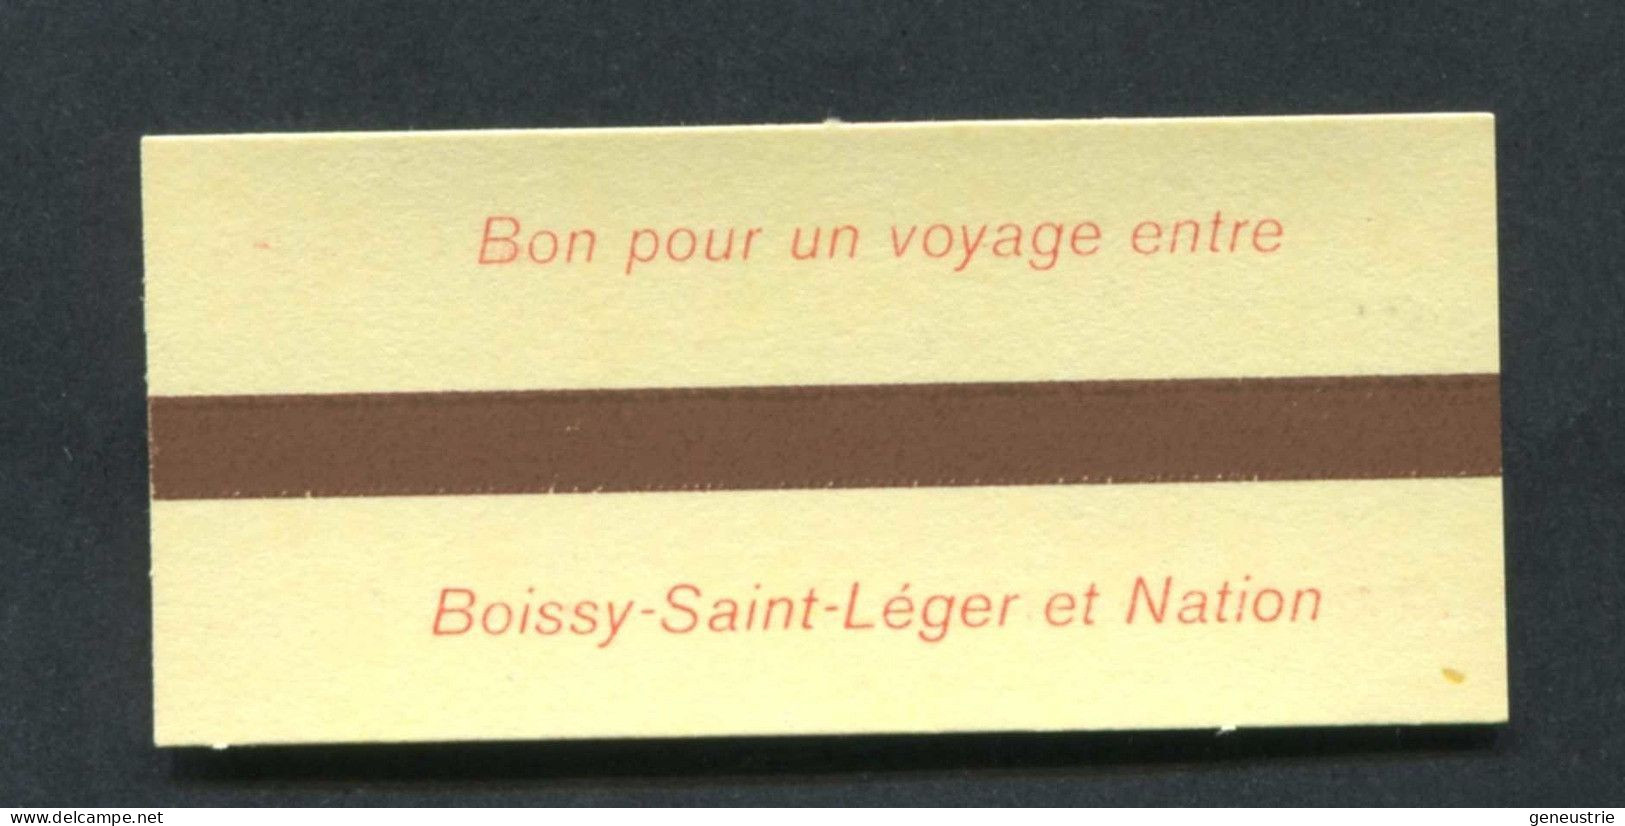 Neuf ! Ticket De Métro / RER - SNCF / RATP Pour Le Personnel SNCF (Billet 1ère Classe Boissy Saint Leger / Paris Nation) - Europa